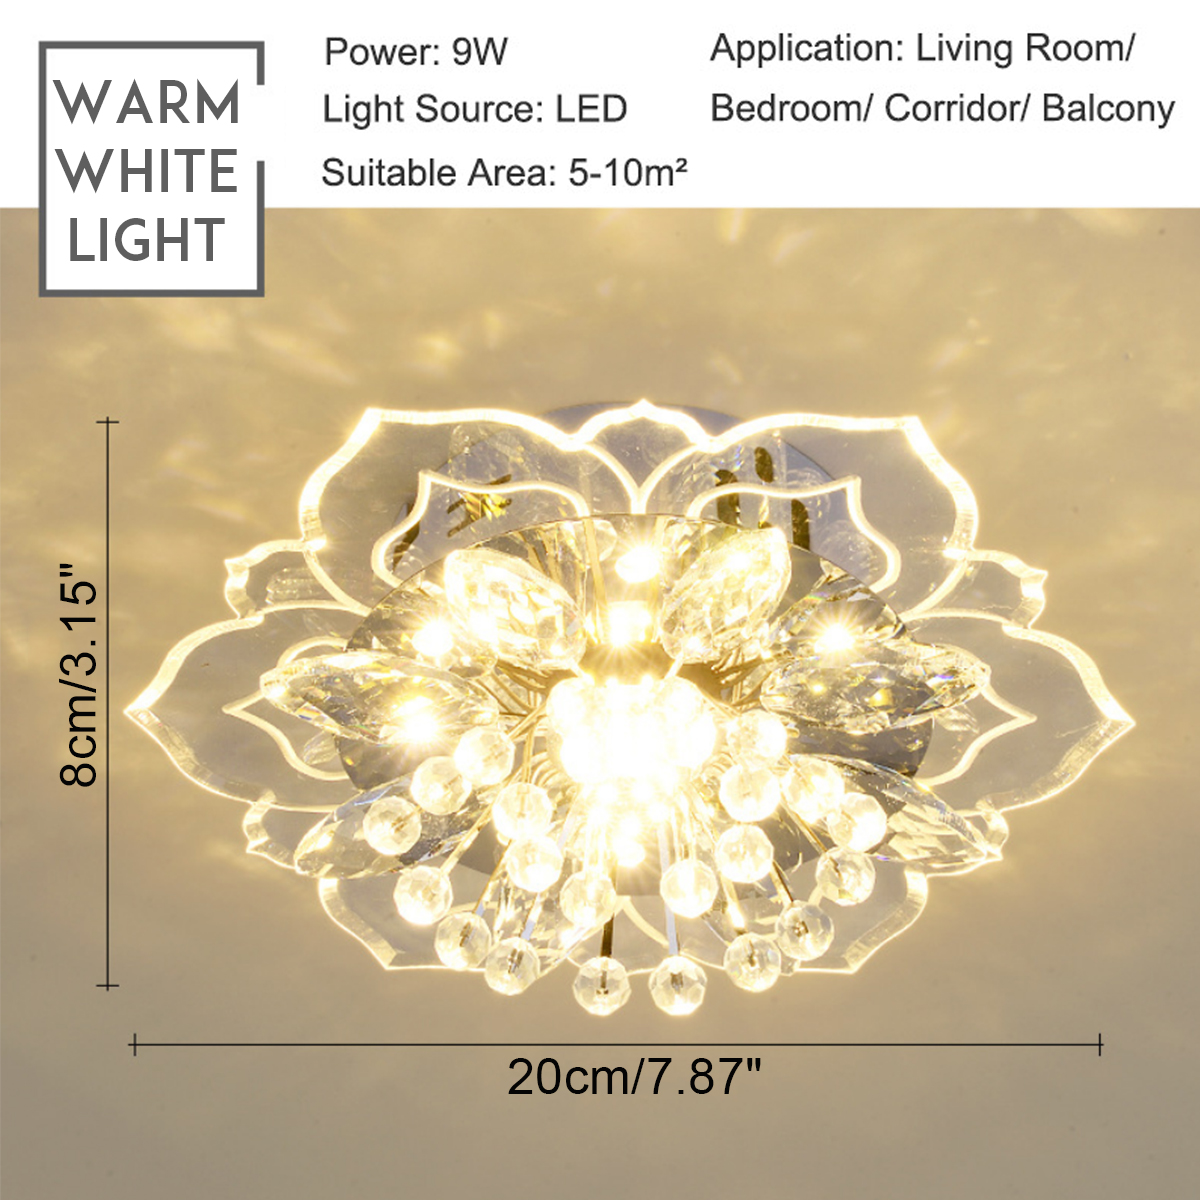 220V-Crystal-LED-Ceiling-Light-Fixture-Pendant-Modern-Lamp-Home-Room-Lighting-1768673-3